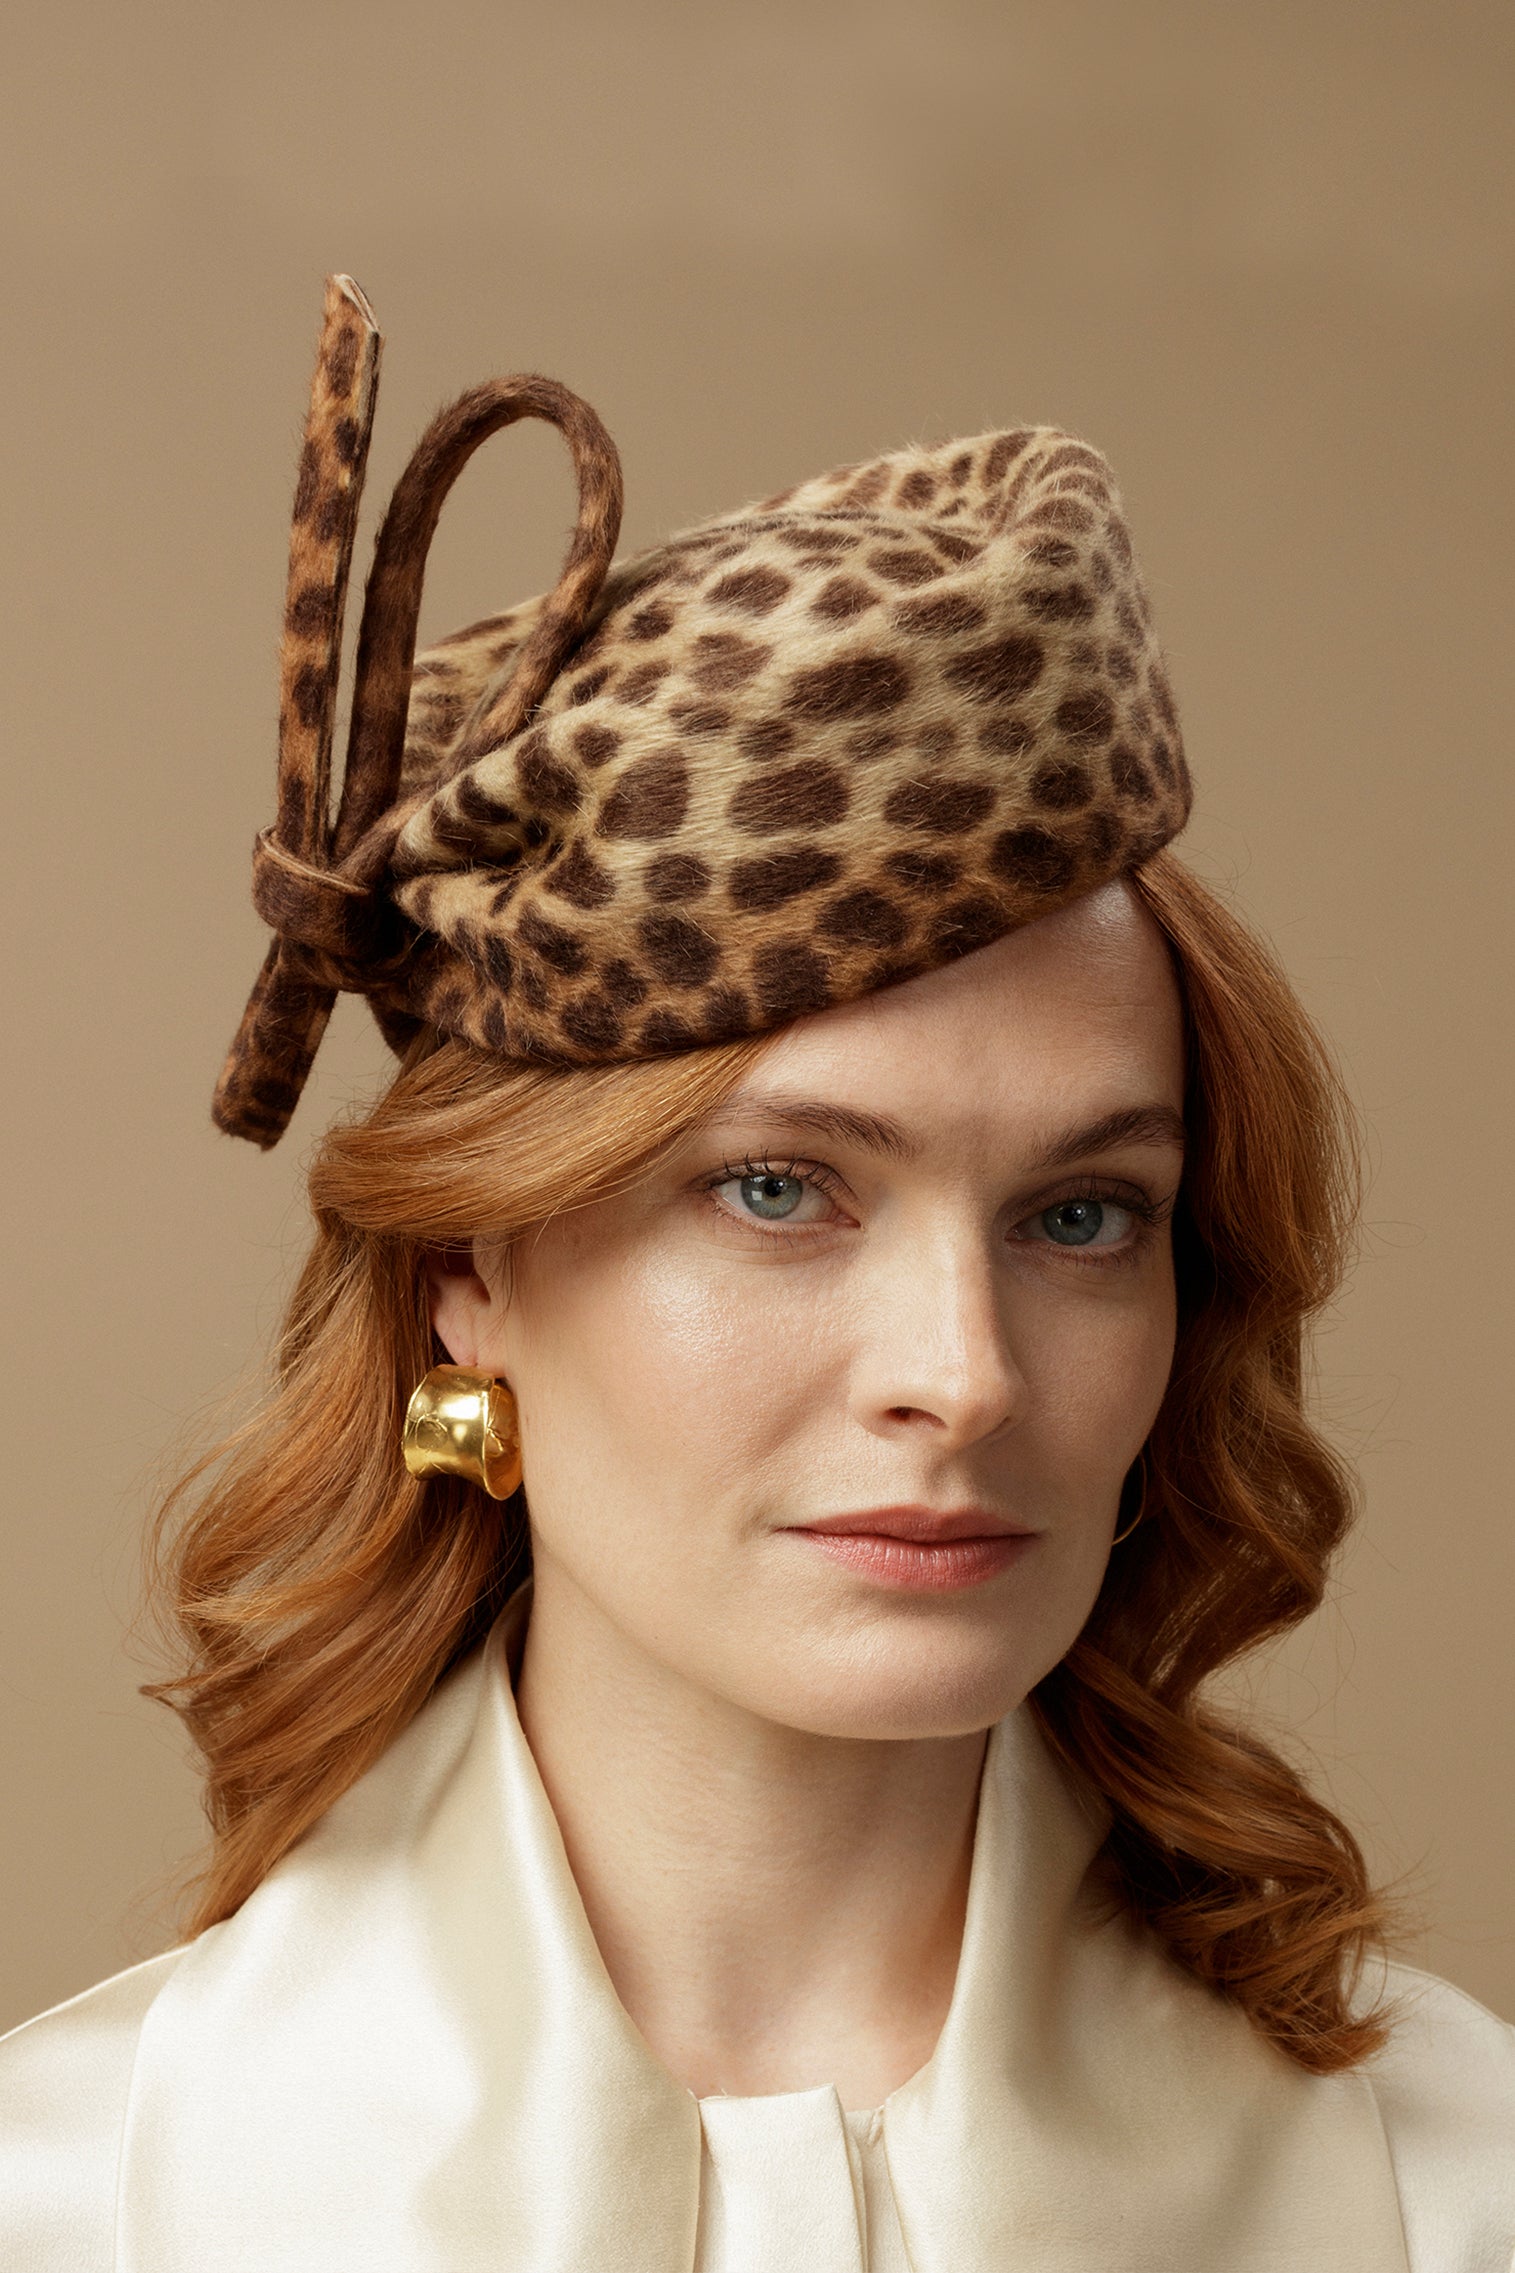 Leopard Mayfair Pillbox Hat - Pillbox Hats for Women - Lock & Co. Hatters London UK